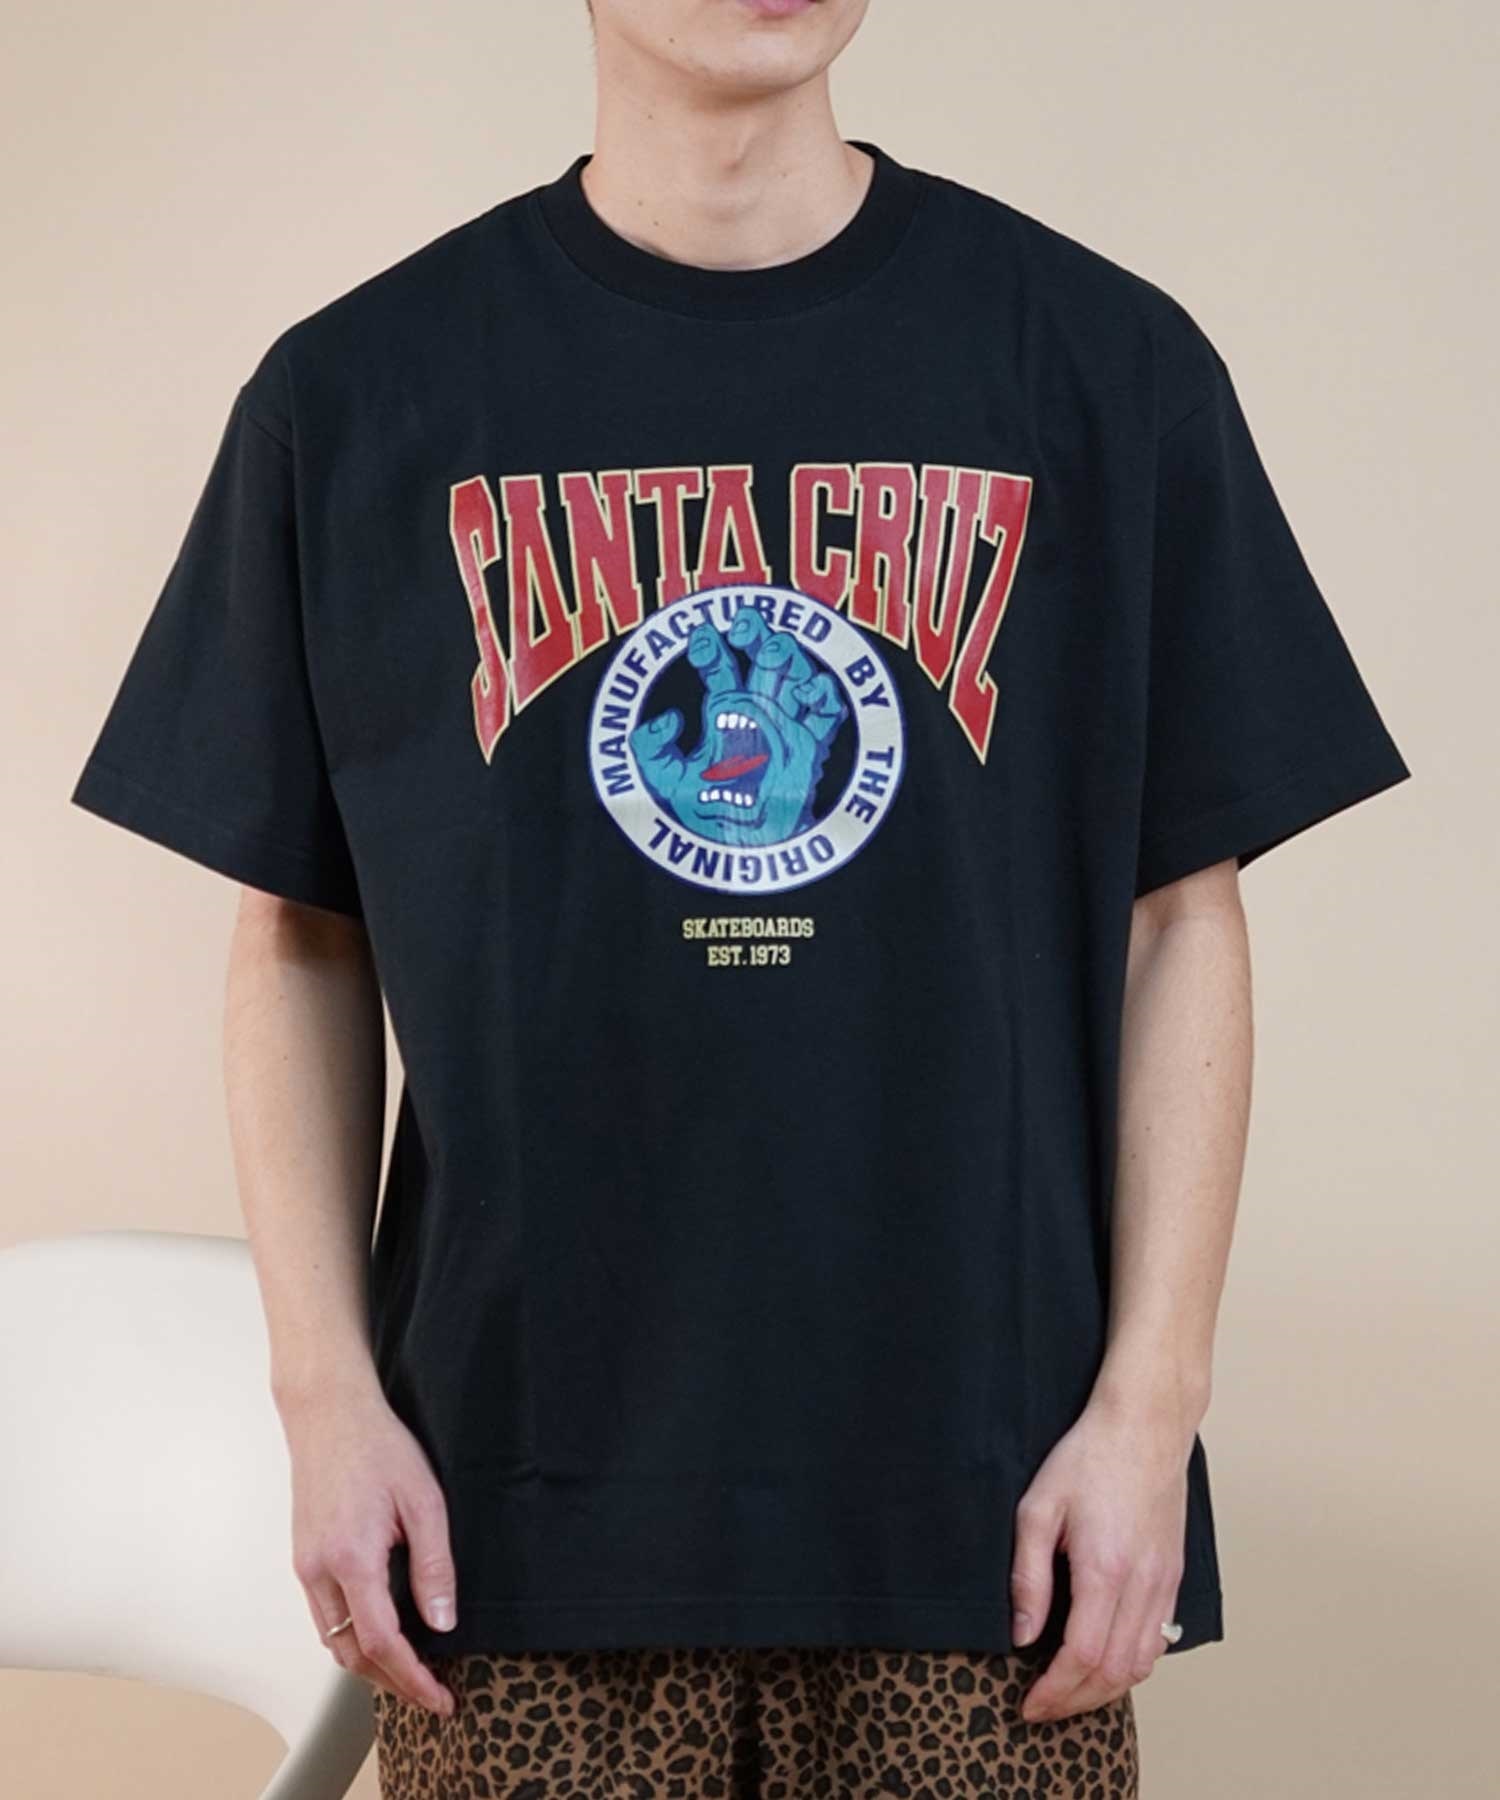 【ムラサキスポーツ限定】 SANTACRUZ サンタクルーズ Tシャツ クルーネック メンズ 半袖 Tシャツ 502241413(ARMY-M)